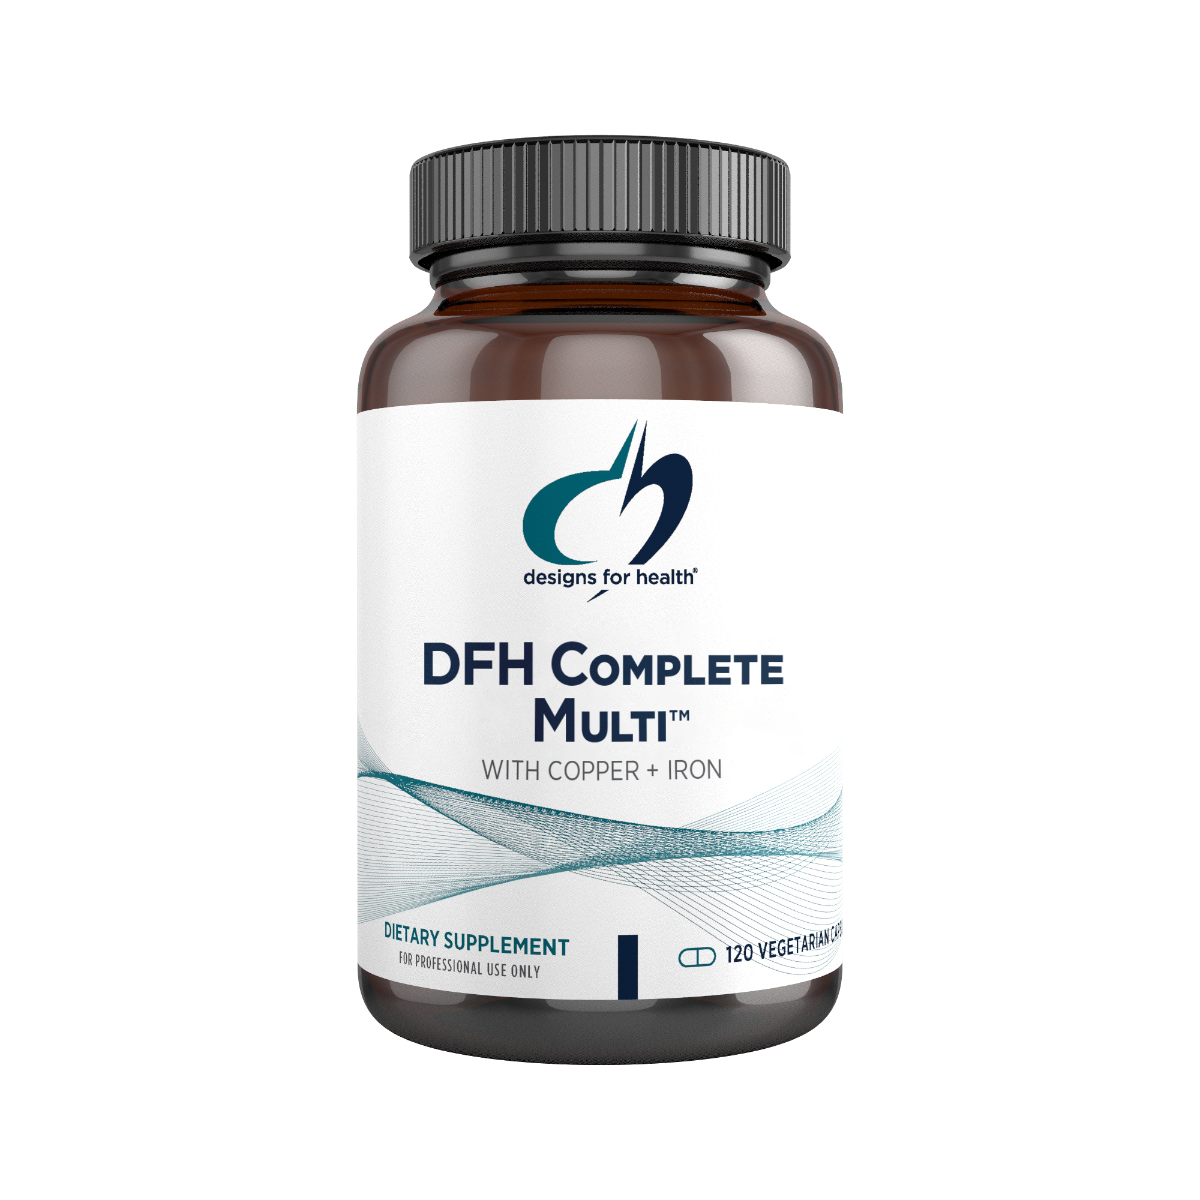 DFH Complete Multi™ with Copper + Iron